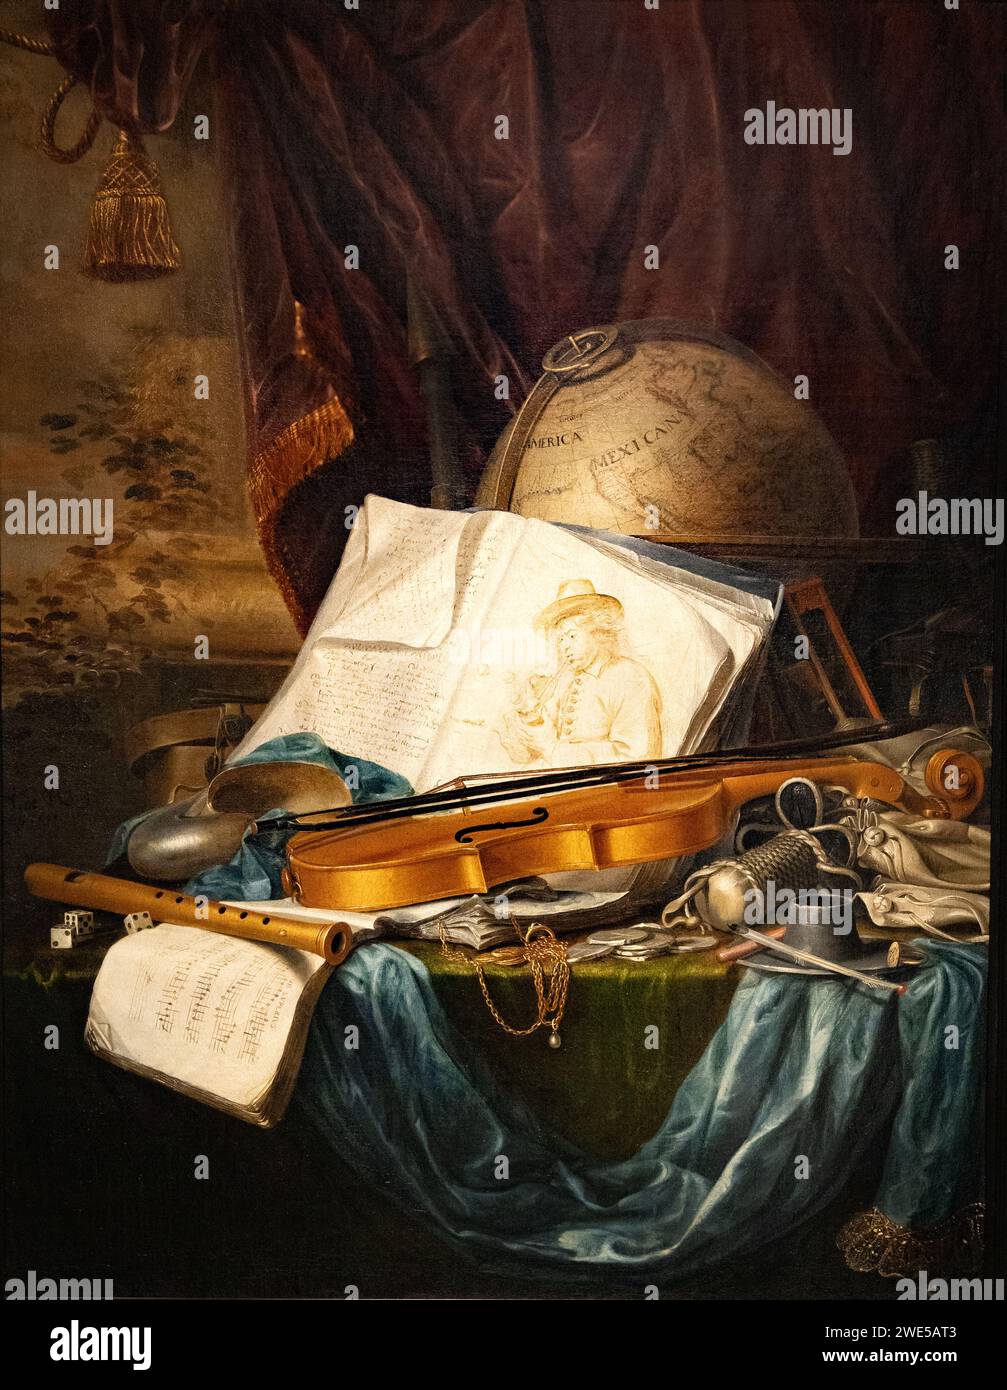 Pieter de Ring, 'natura morta degli strumenti musicali', 1650, pittore olandese del secolo d'oro, in stile barocco, dipinti del XVII secolo. Foto Stock